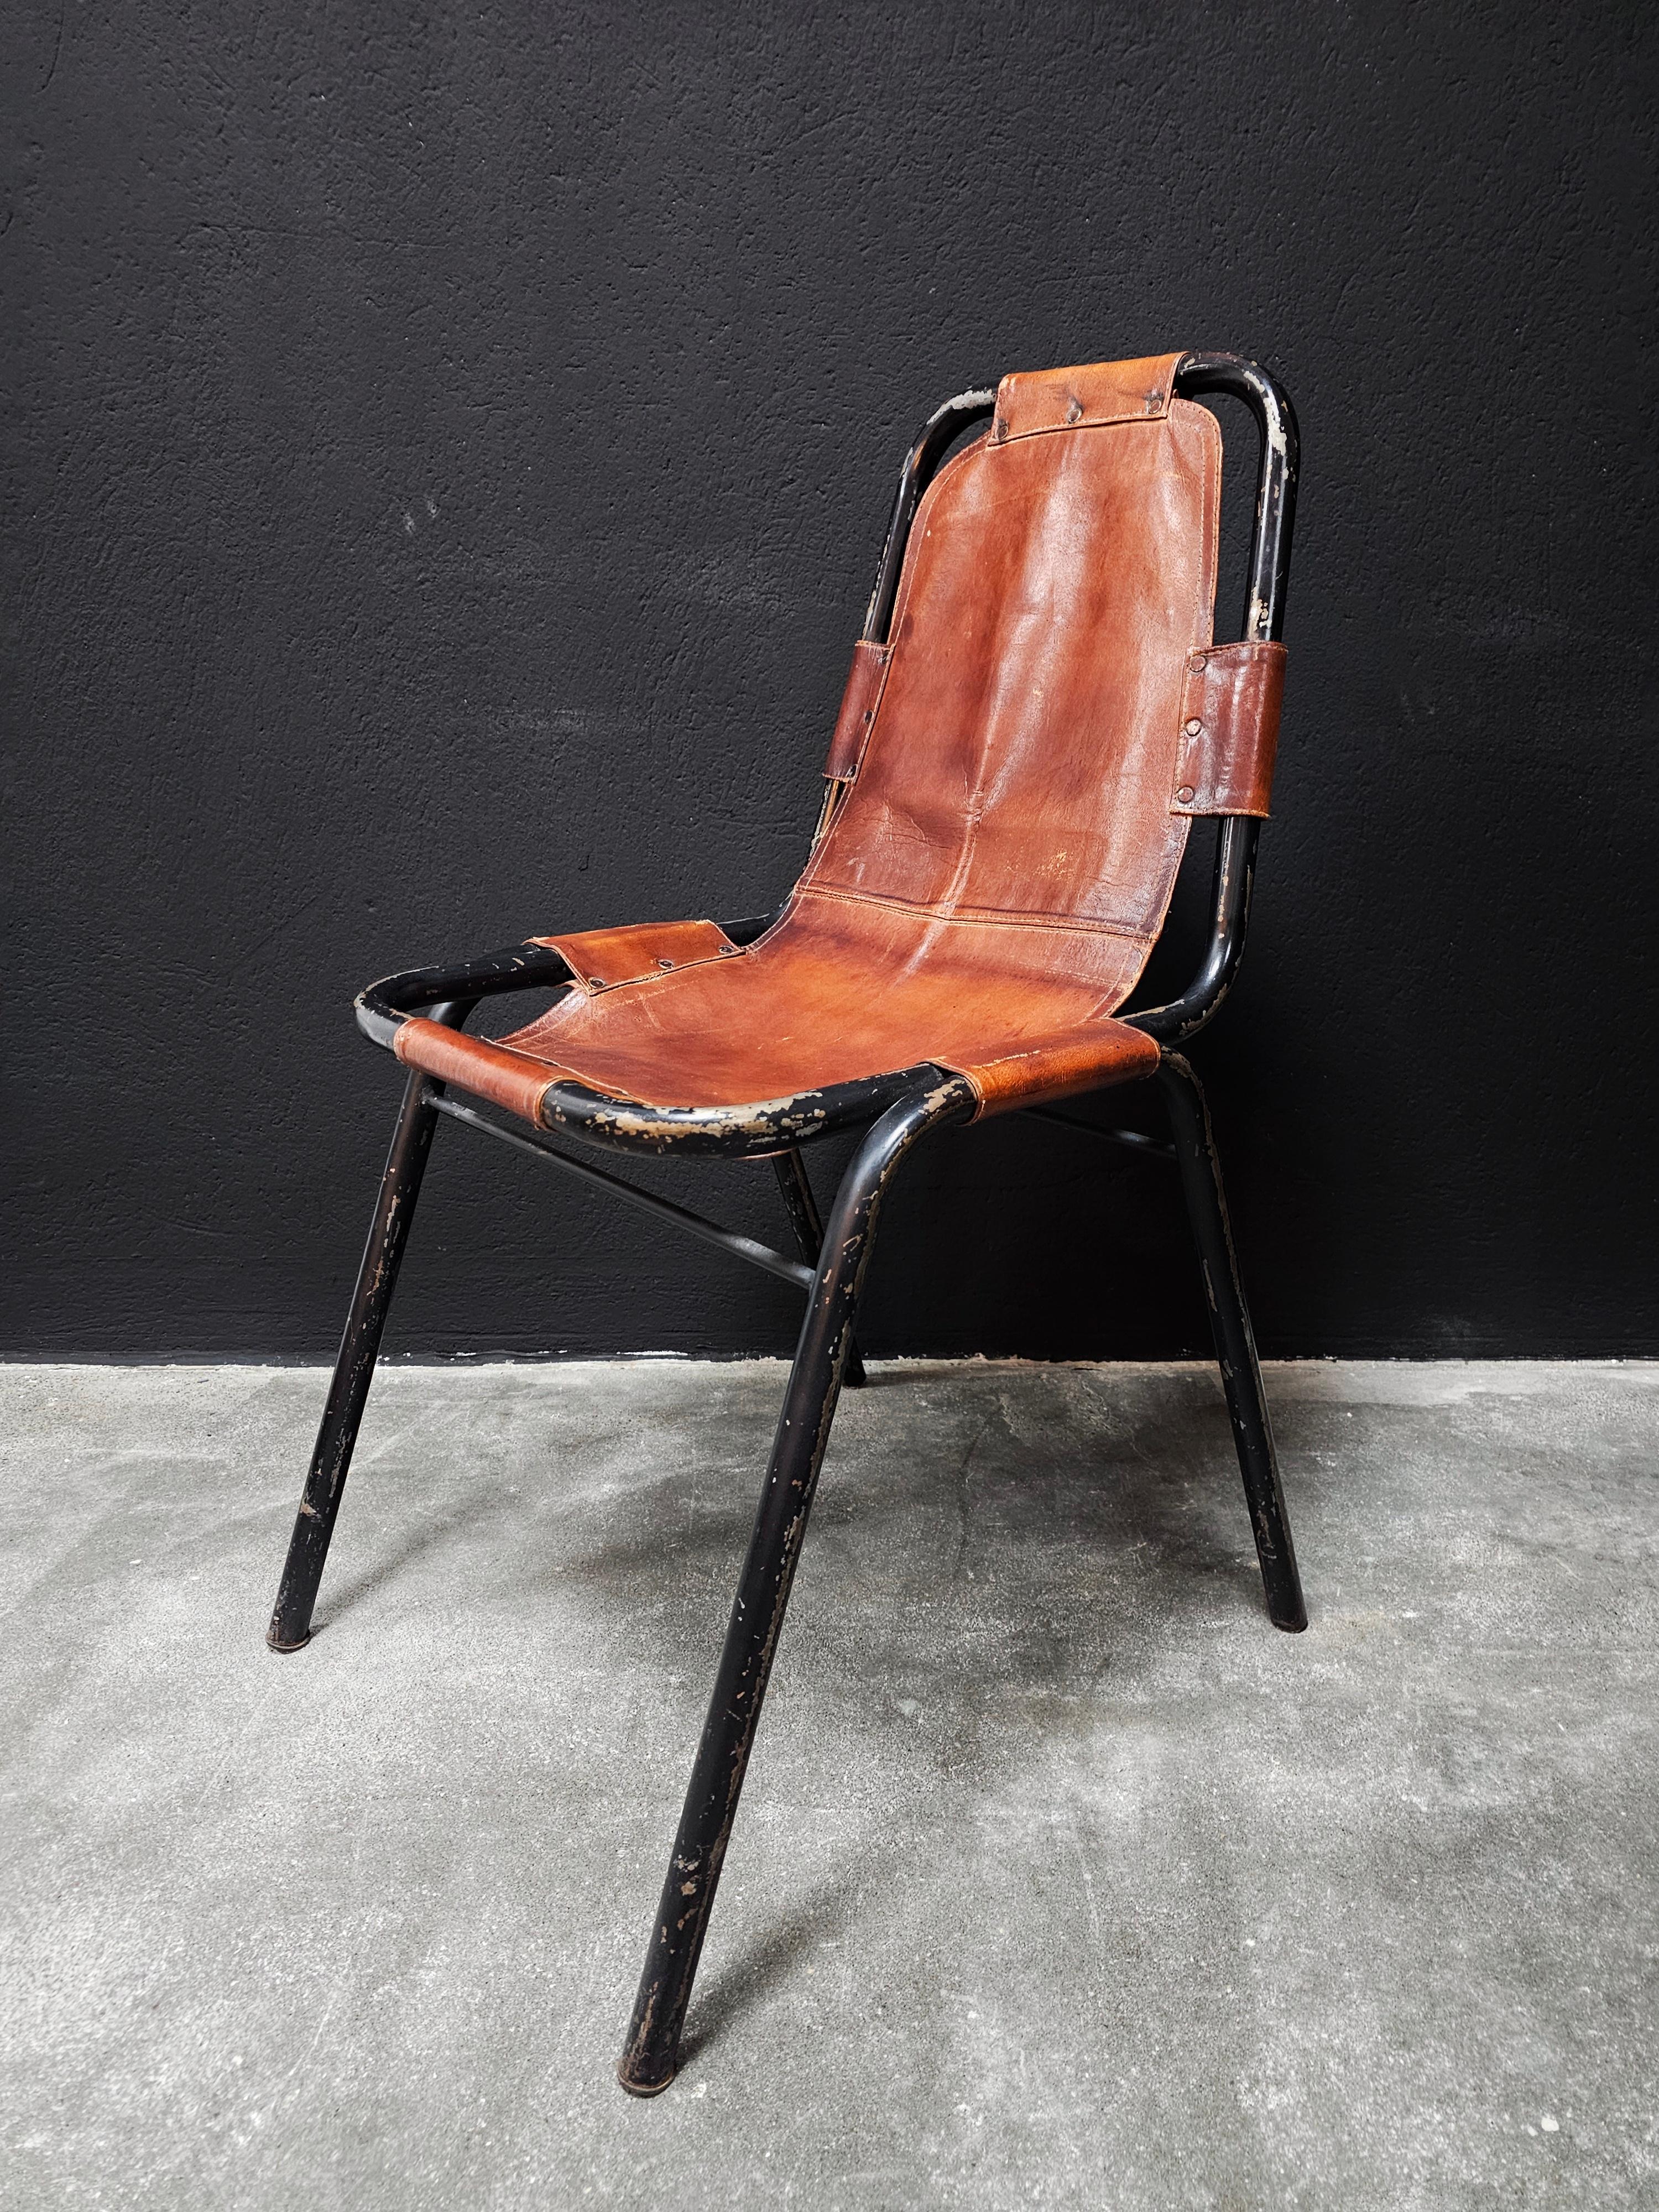 Vous trouverez dans cette liste trois chaises de salle à manger en cuir Bauhaus conçues et fabriquées par DalVera dans le style de Charlotte Perriand. Les chaises ont un cadre tubulaire noir et des sièges en cuir cognac. Les cadres noirs indiquent